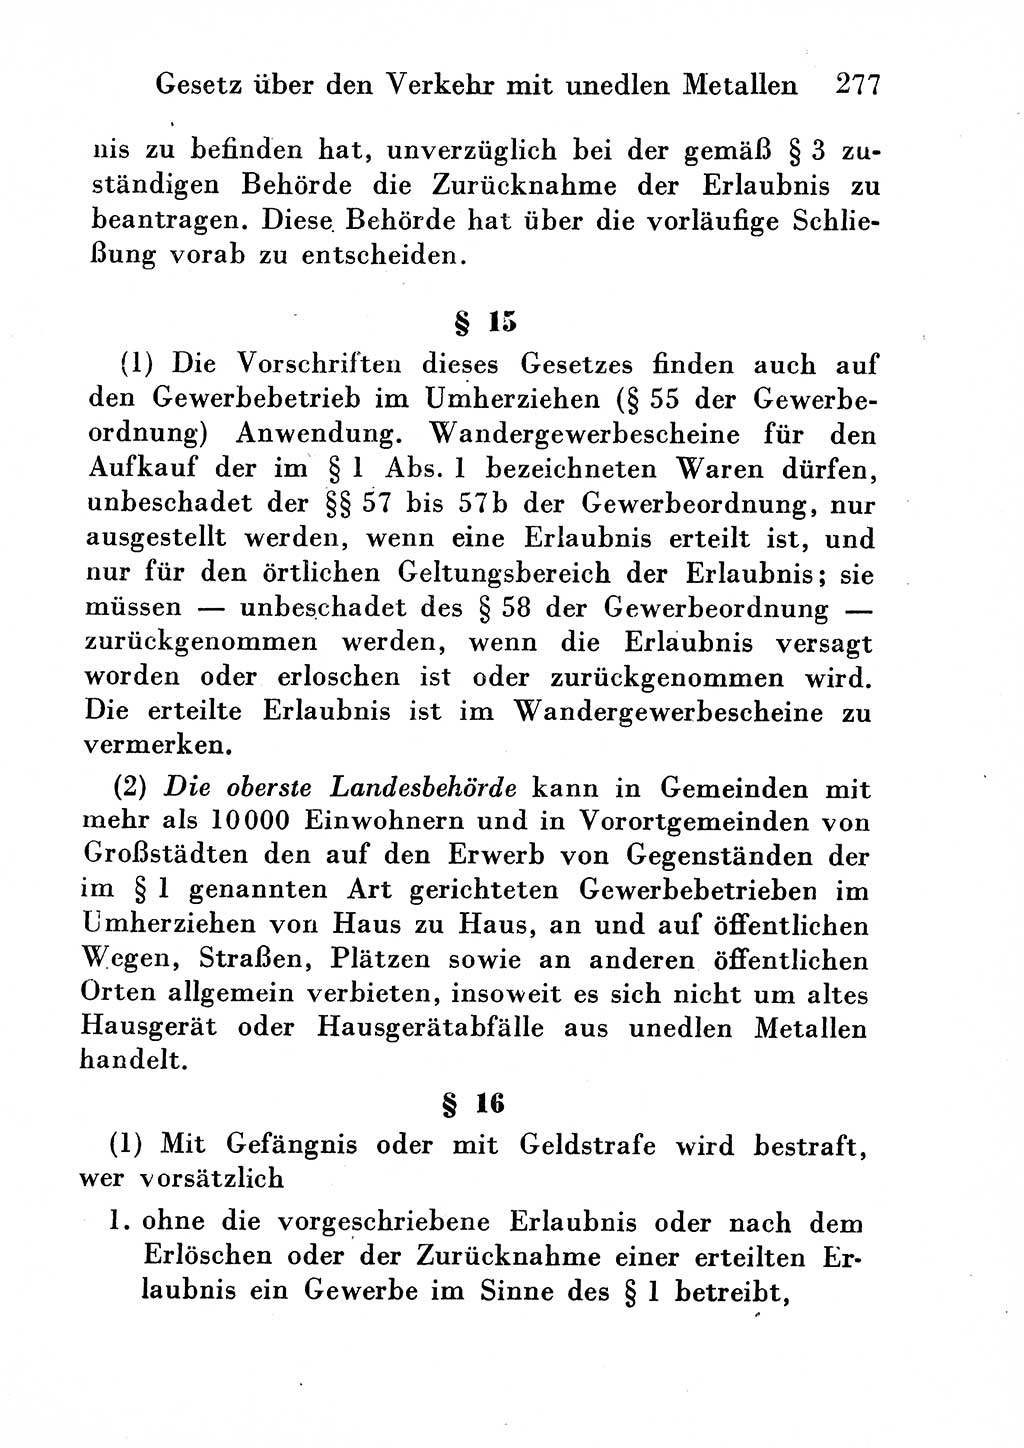 Strafgesetzbuch (StGB) und andere Strafgesetze [Deutsche Demokratische Republik (DDR)] 1954, Seite 277 (StGB Strafges. DDR 1954, S. 277)